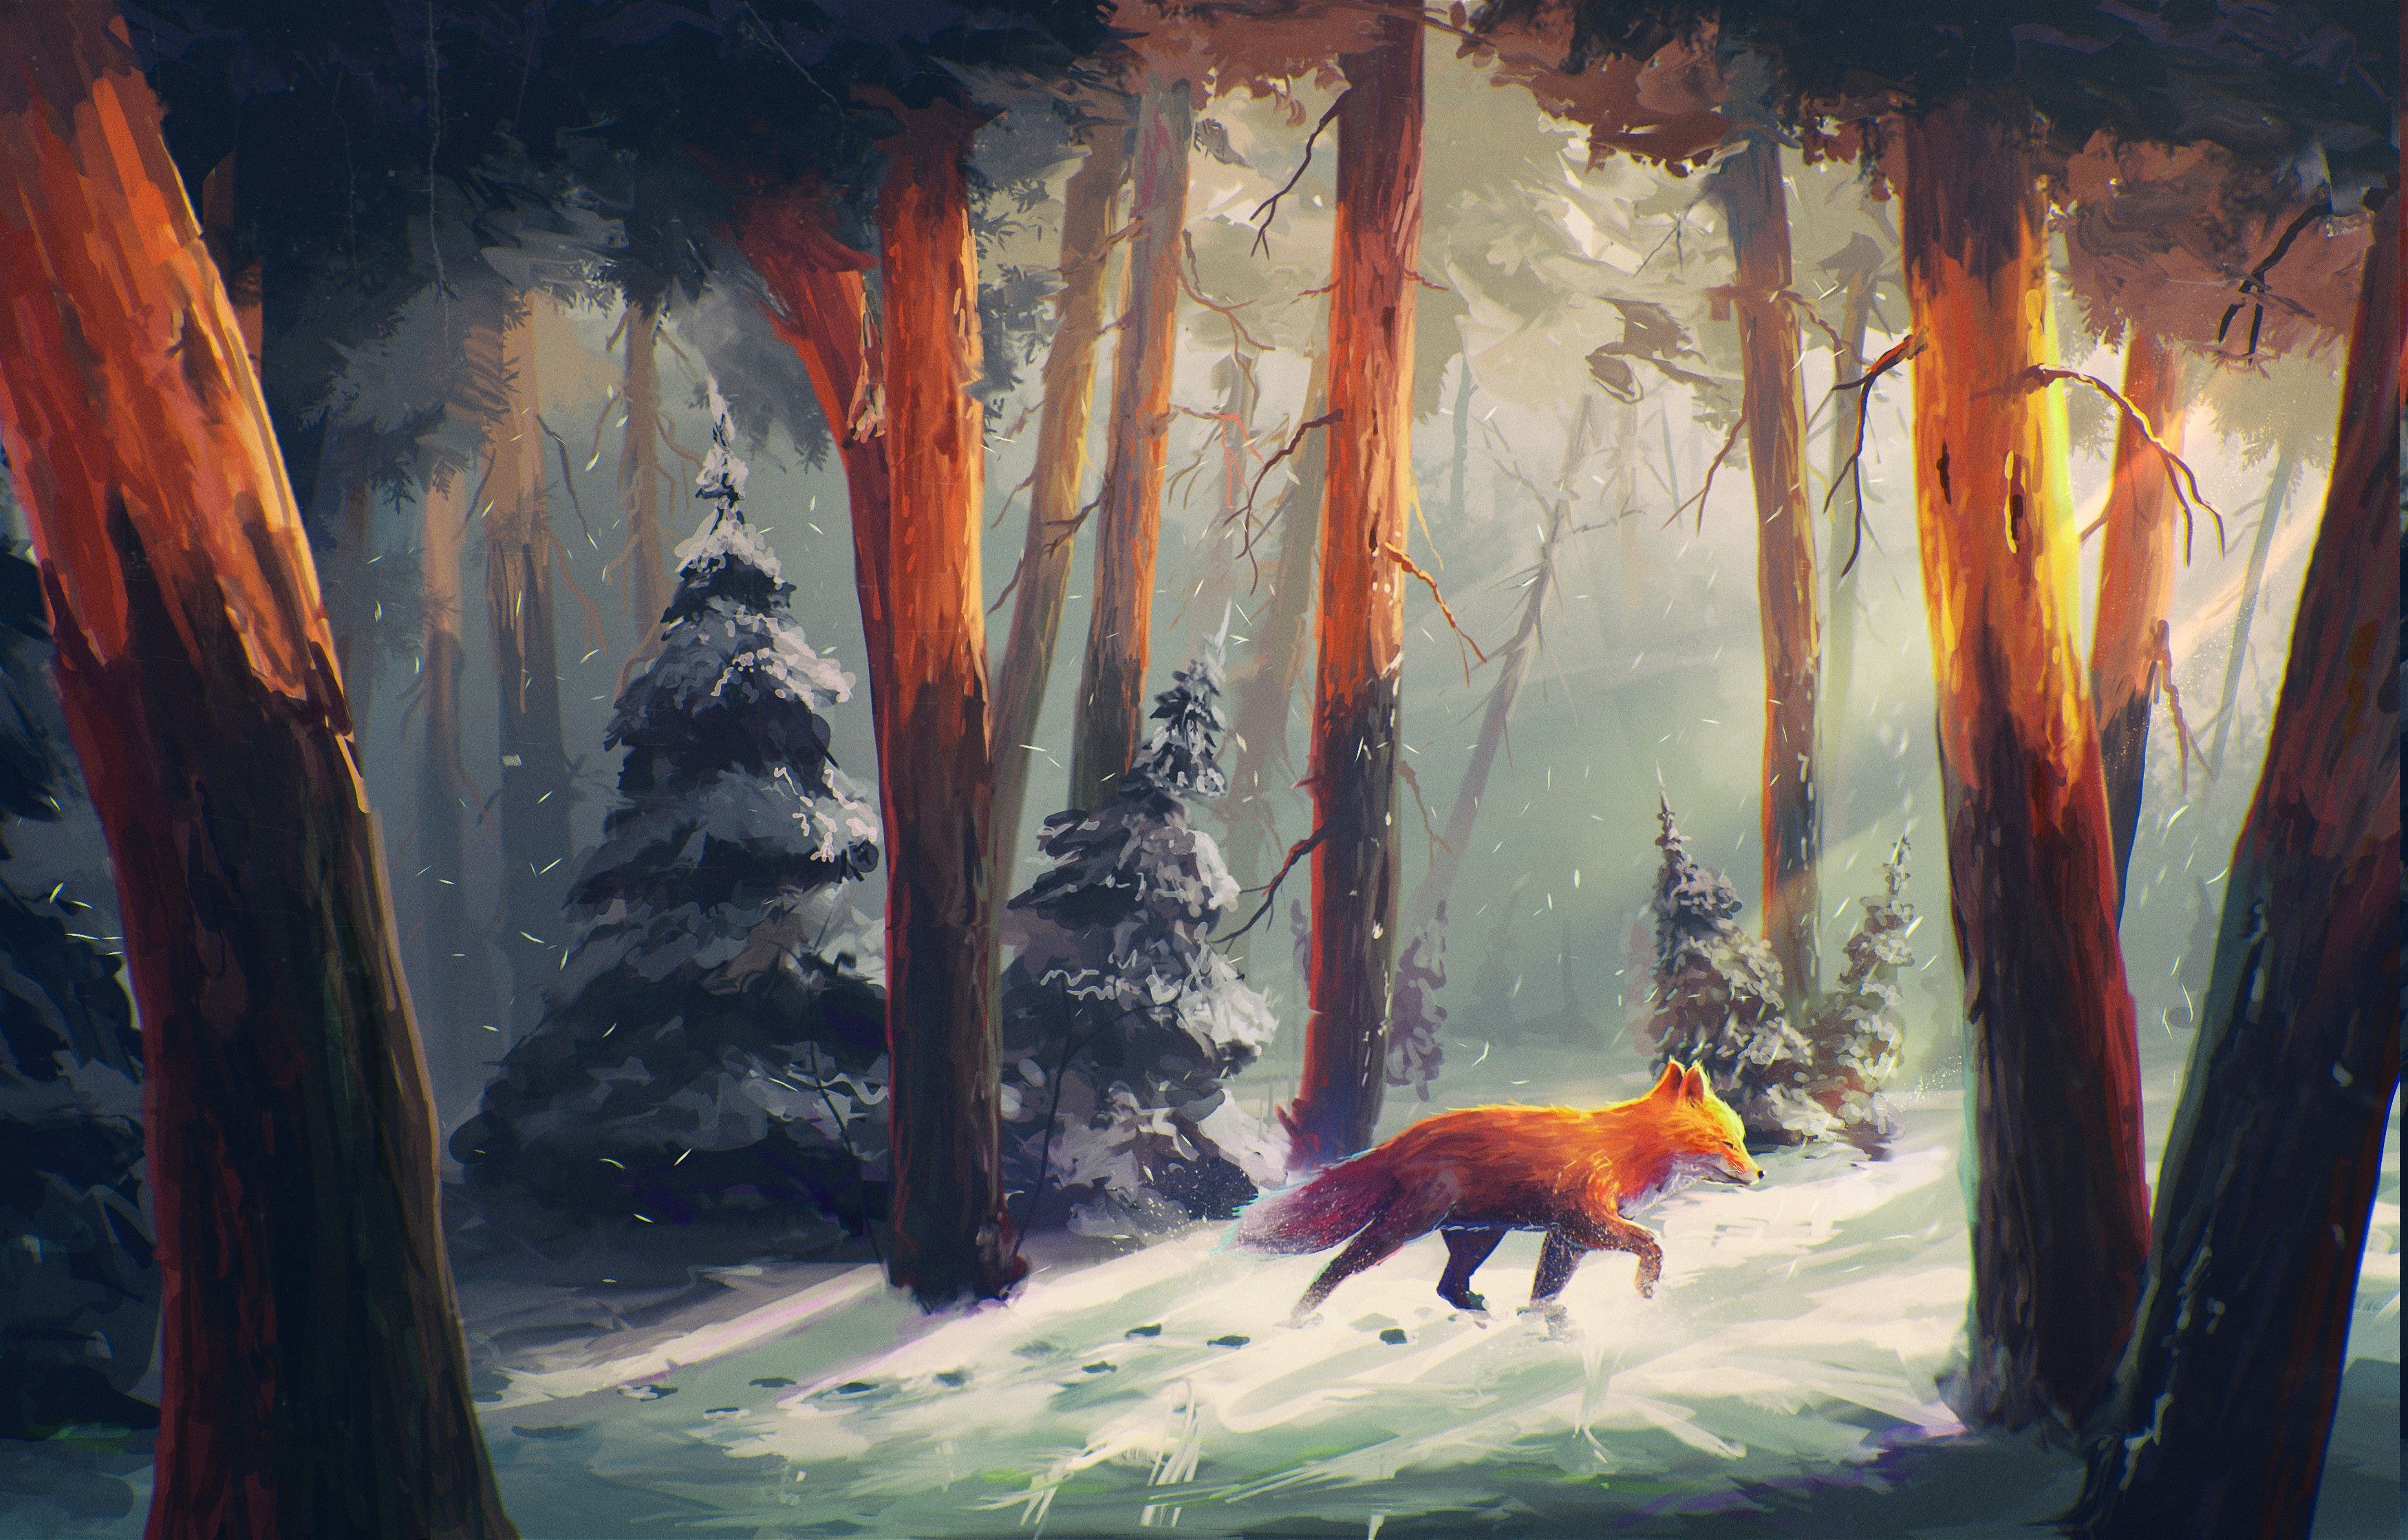 nature, Animals, Snow, Artwork, Digital Art, Forest, Sylar, Sunlight, Fox Wallpaper HD / Desktop and Mobile Backgrou. Desktop background nature, Fox artwork, Art